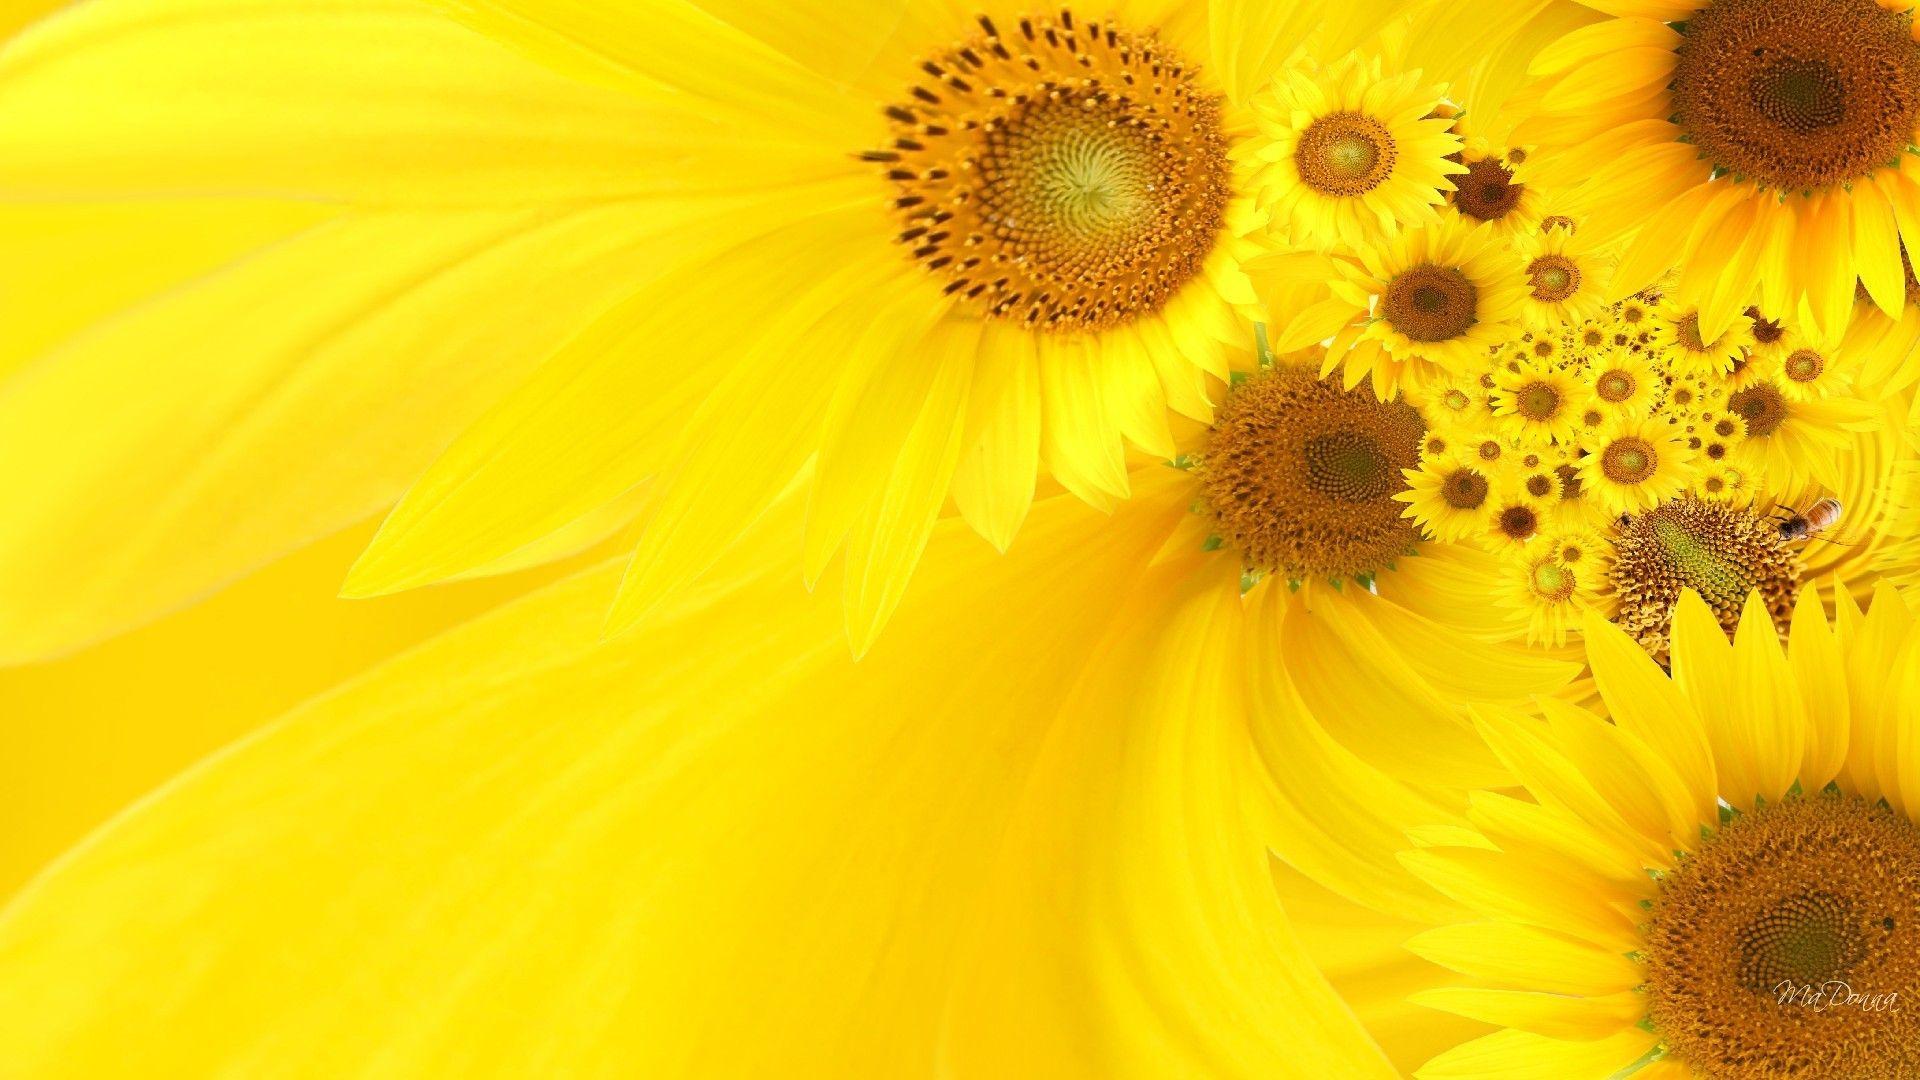 Sunflower 3D Widescreen Desktop Wallpaper Wallpicel.com